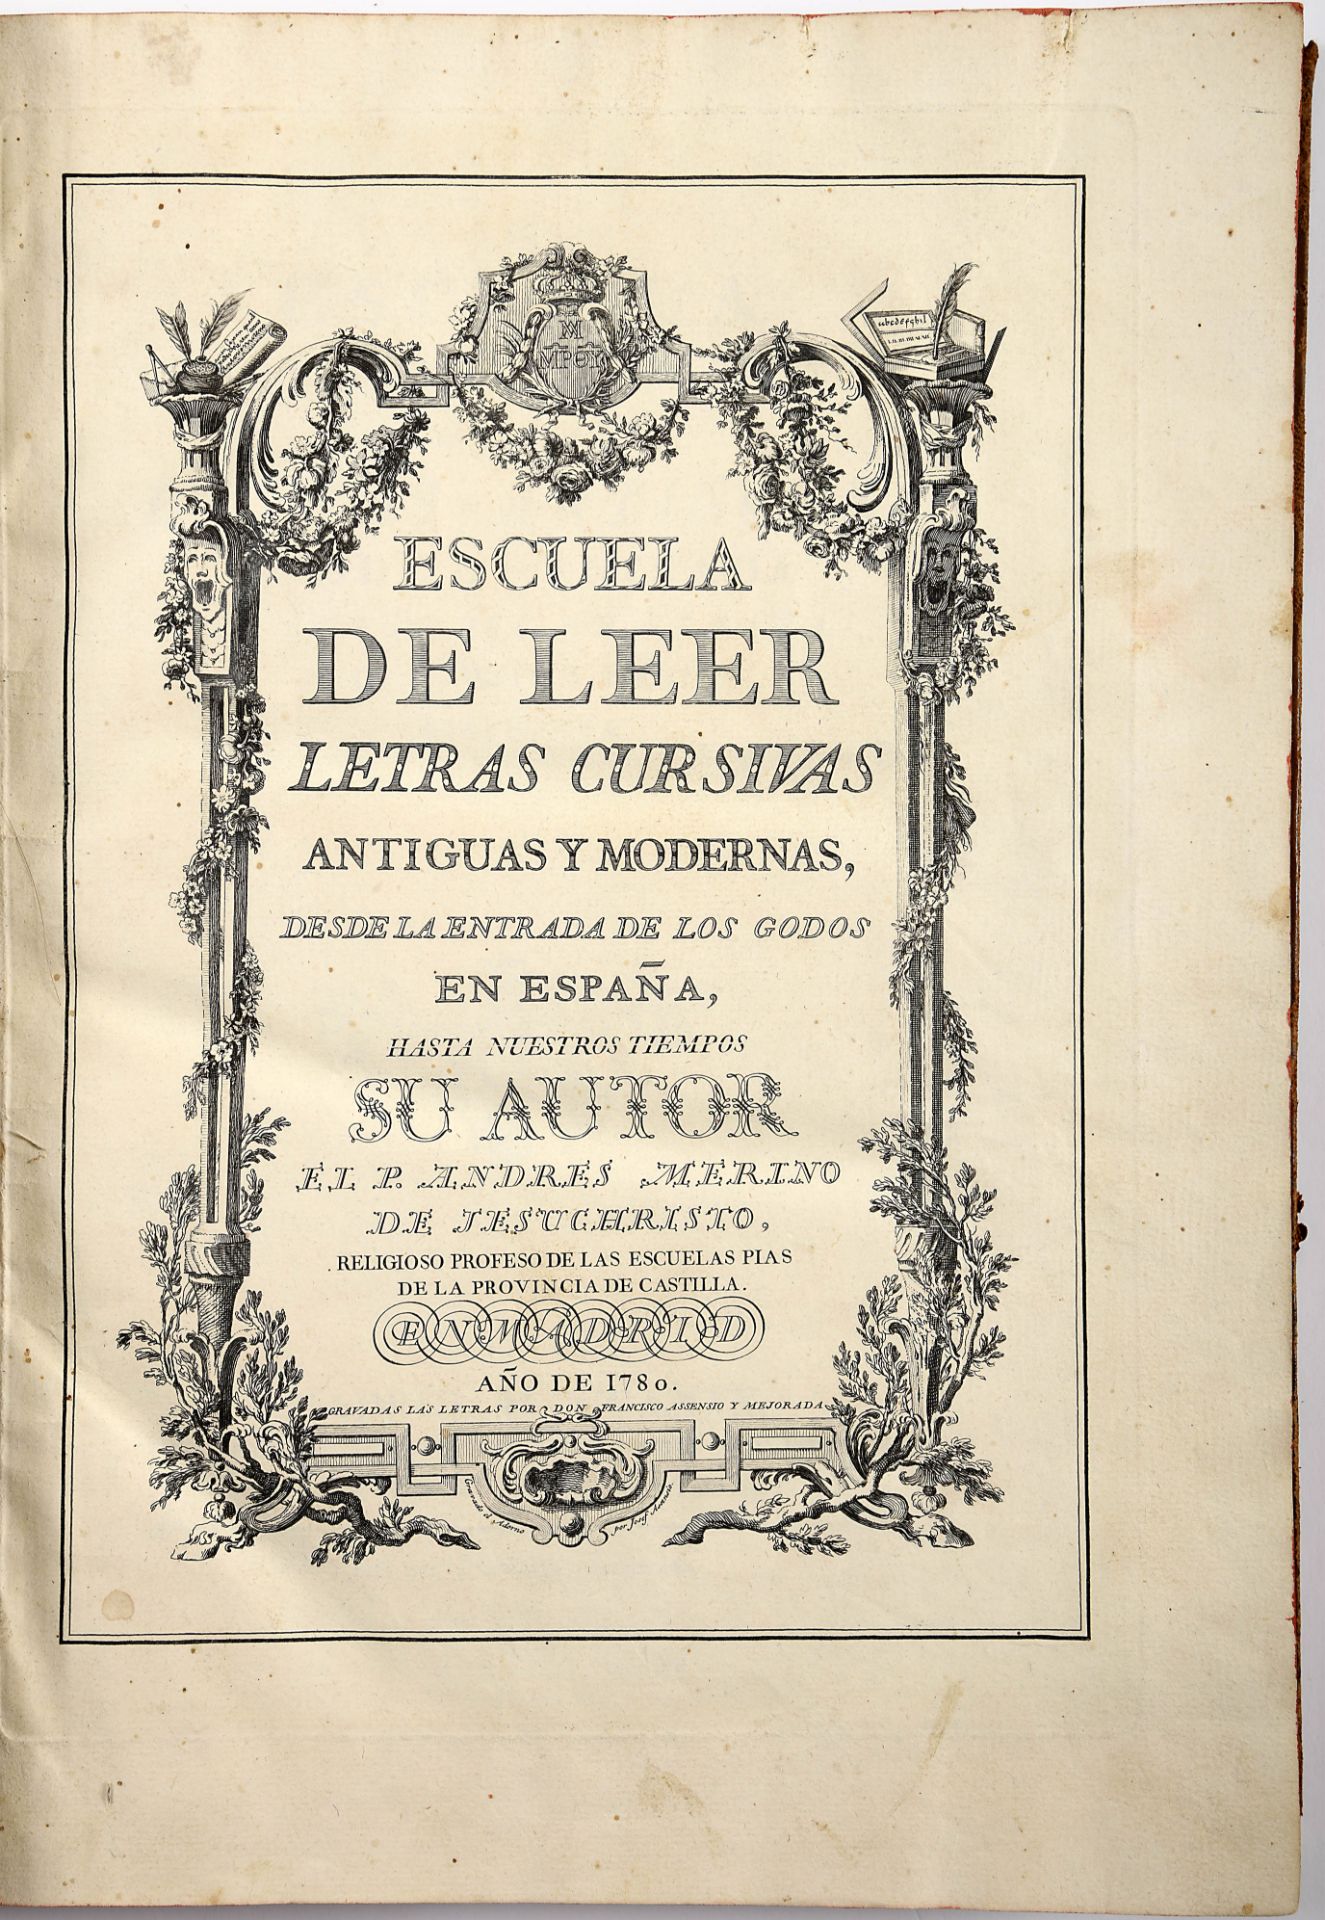 MERINO DE JESUCRISTO, Pe. Andres, Sch. P.- Escuela paleographica, ó de leer letras antiguas, desde l